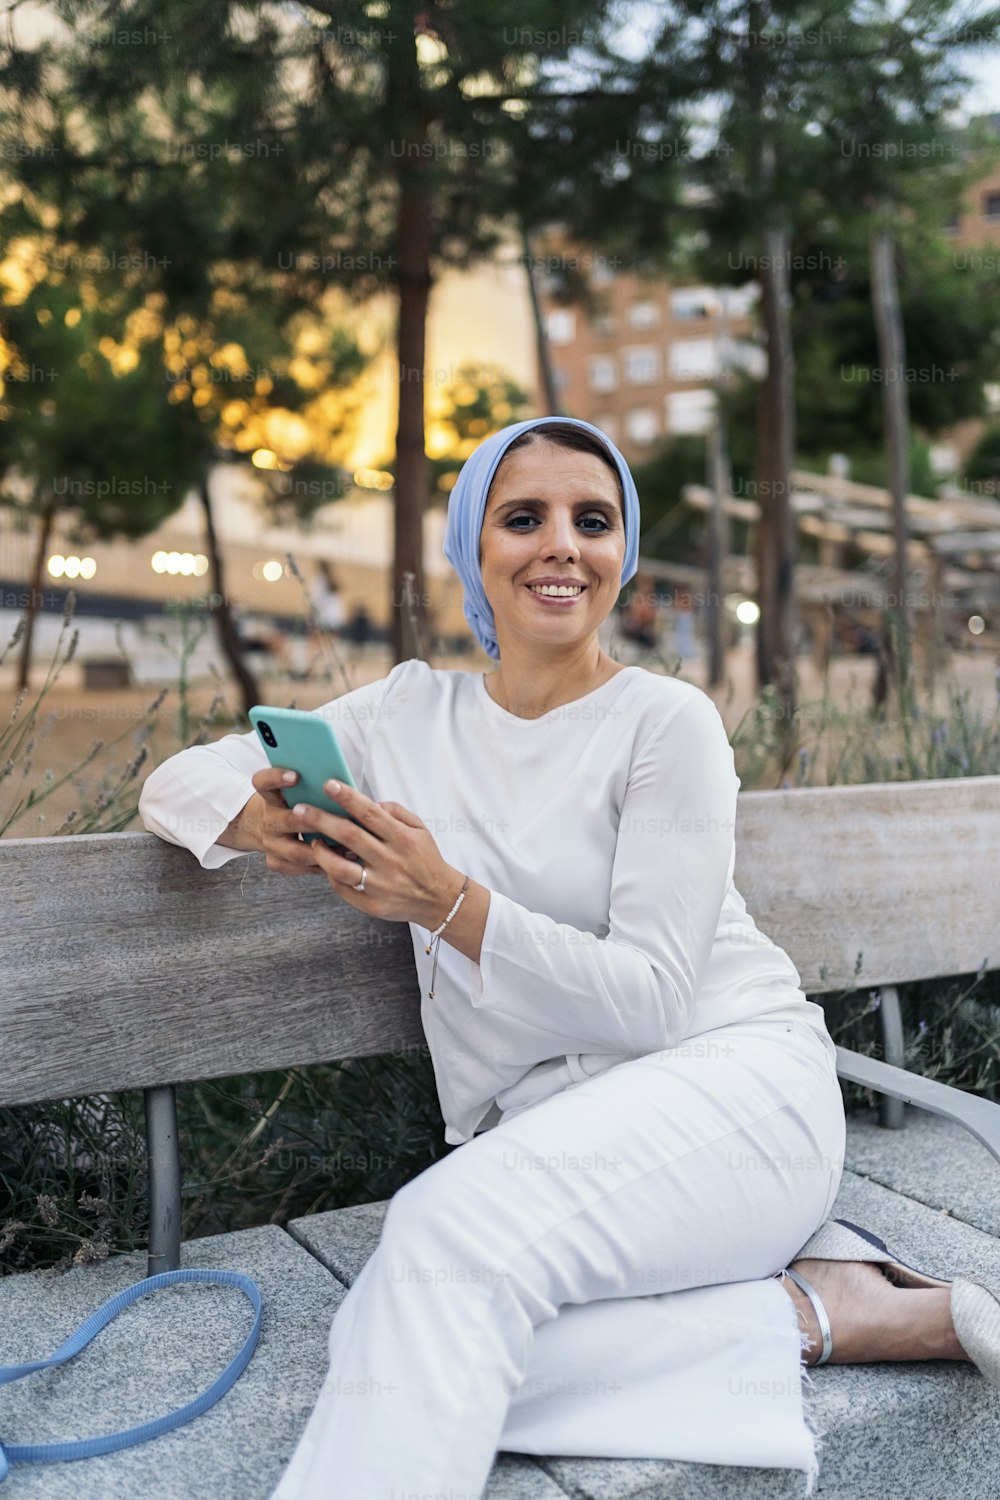 Vista frontal de uma mulher muçulmana usando um lenço de cabeça azul claro sentado em um banco no parque usando seu telefone.